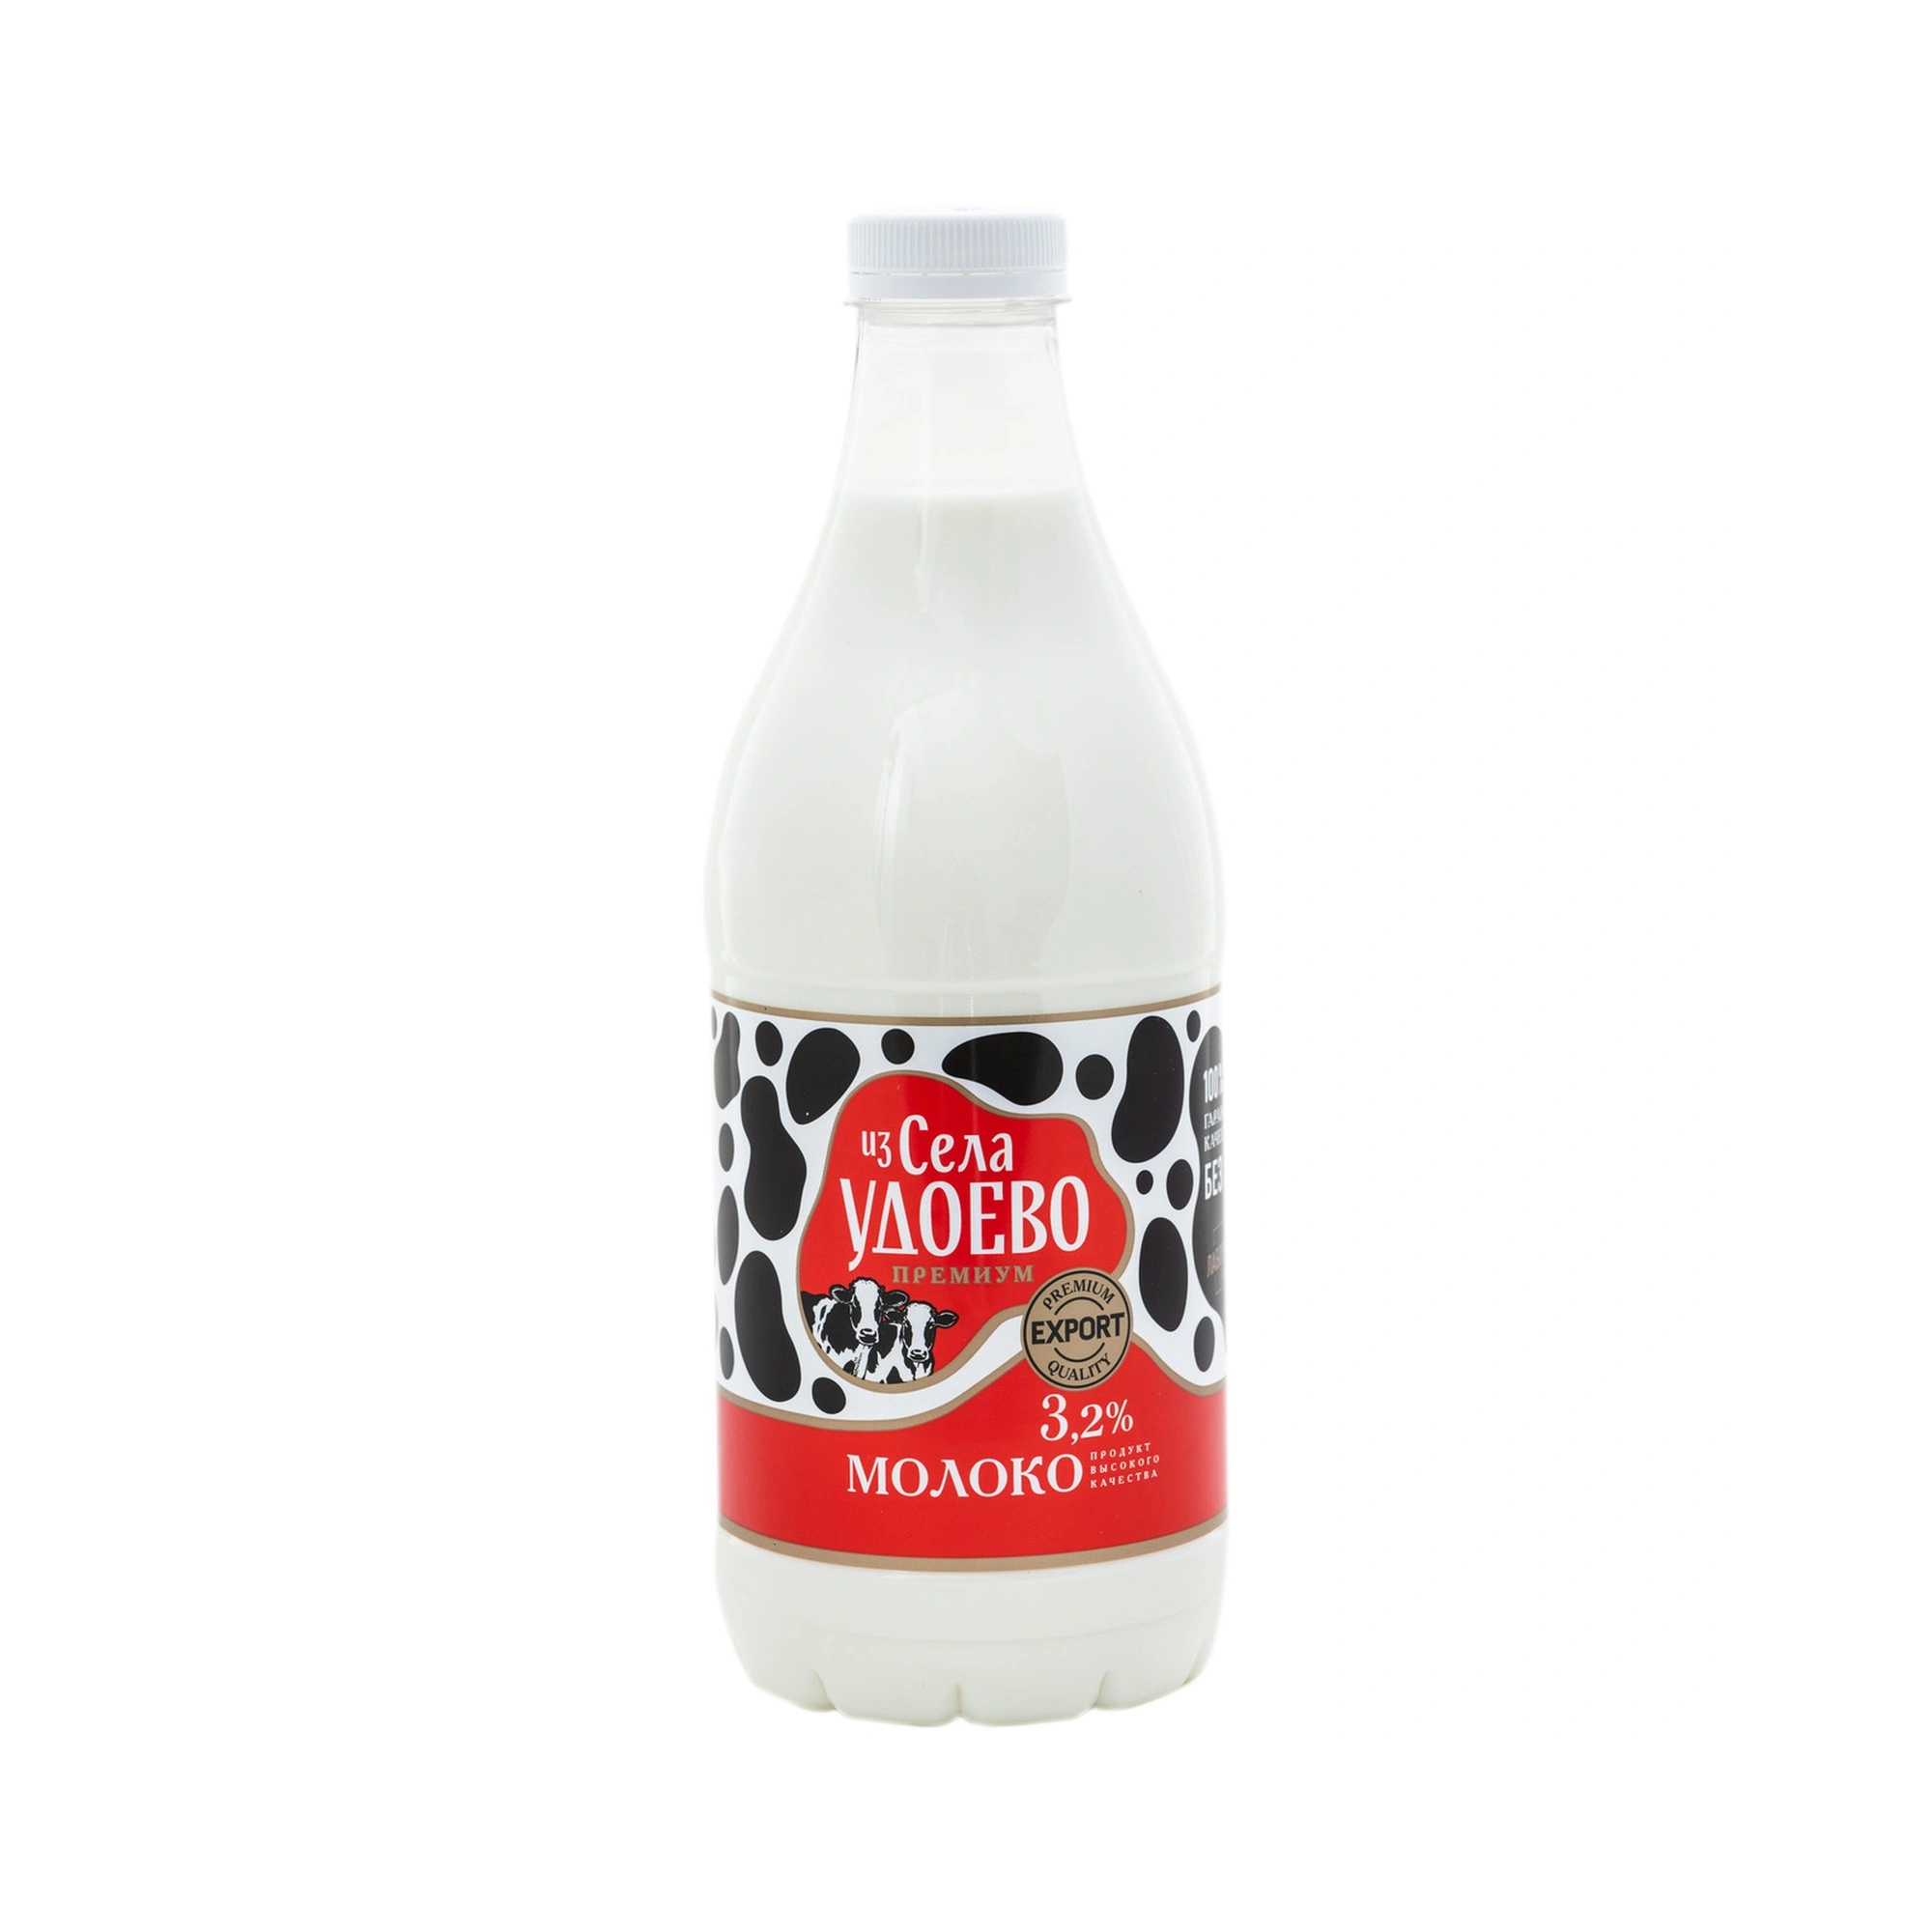 Молоко Из Села Удоево пастеризованное 3,2%, 1350 г